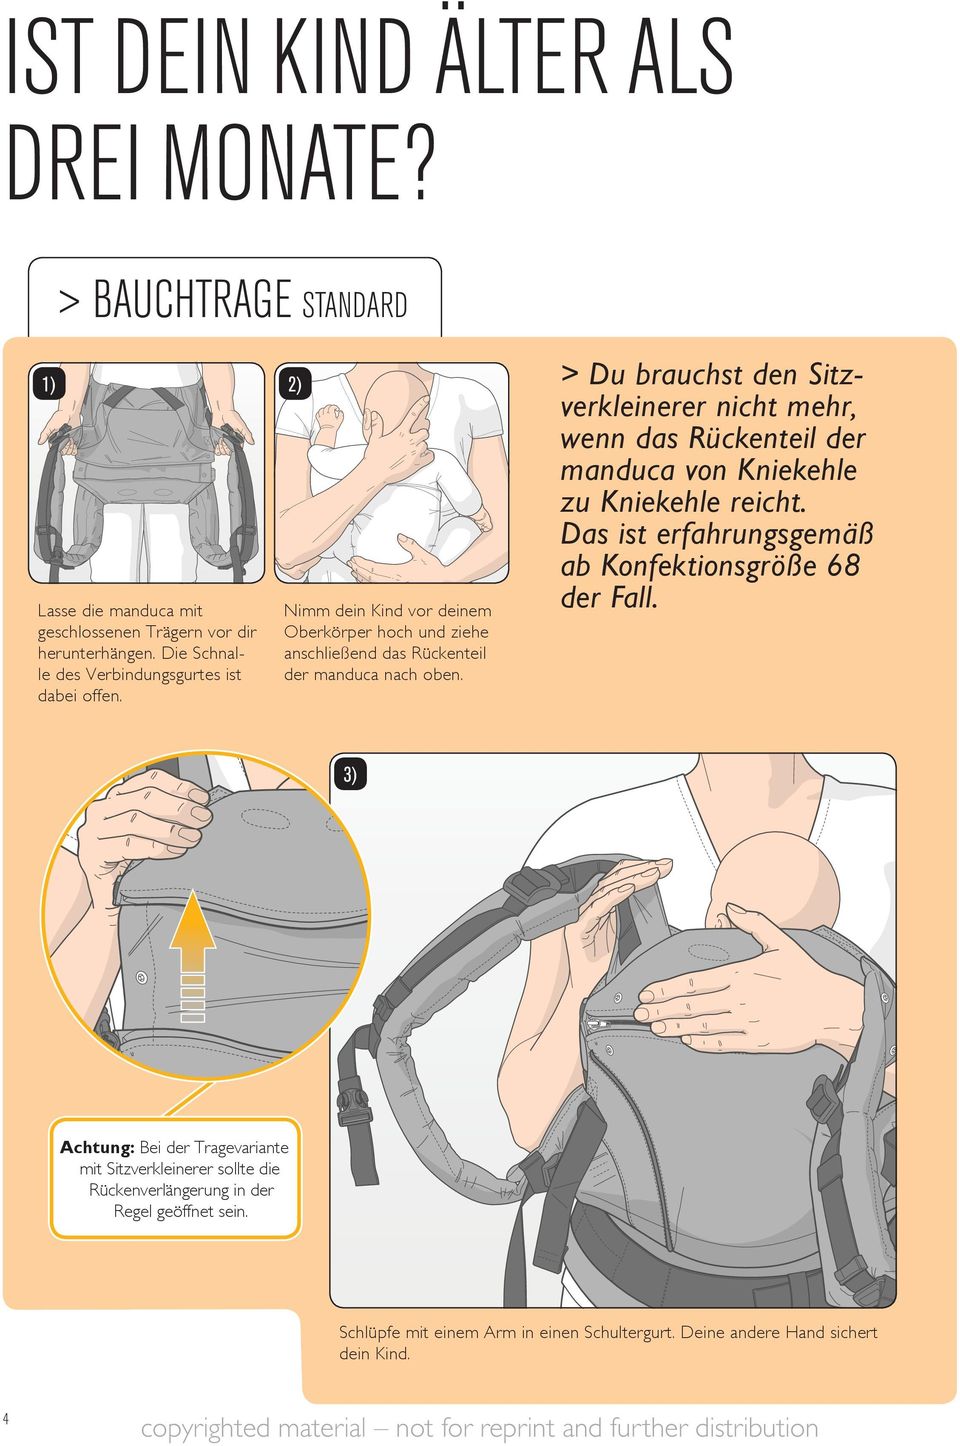 > Du brauchst den Sitzverkleinerer nicht mehr, wenn das Rückenteil der manduca von Kniekehle zu Kniekehle reicht.